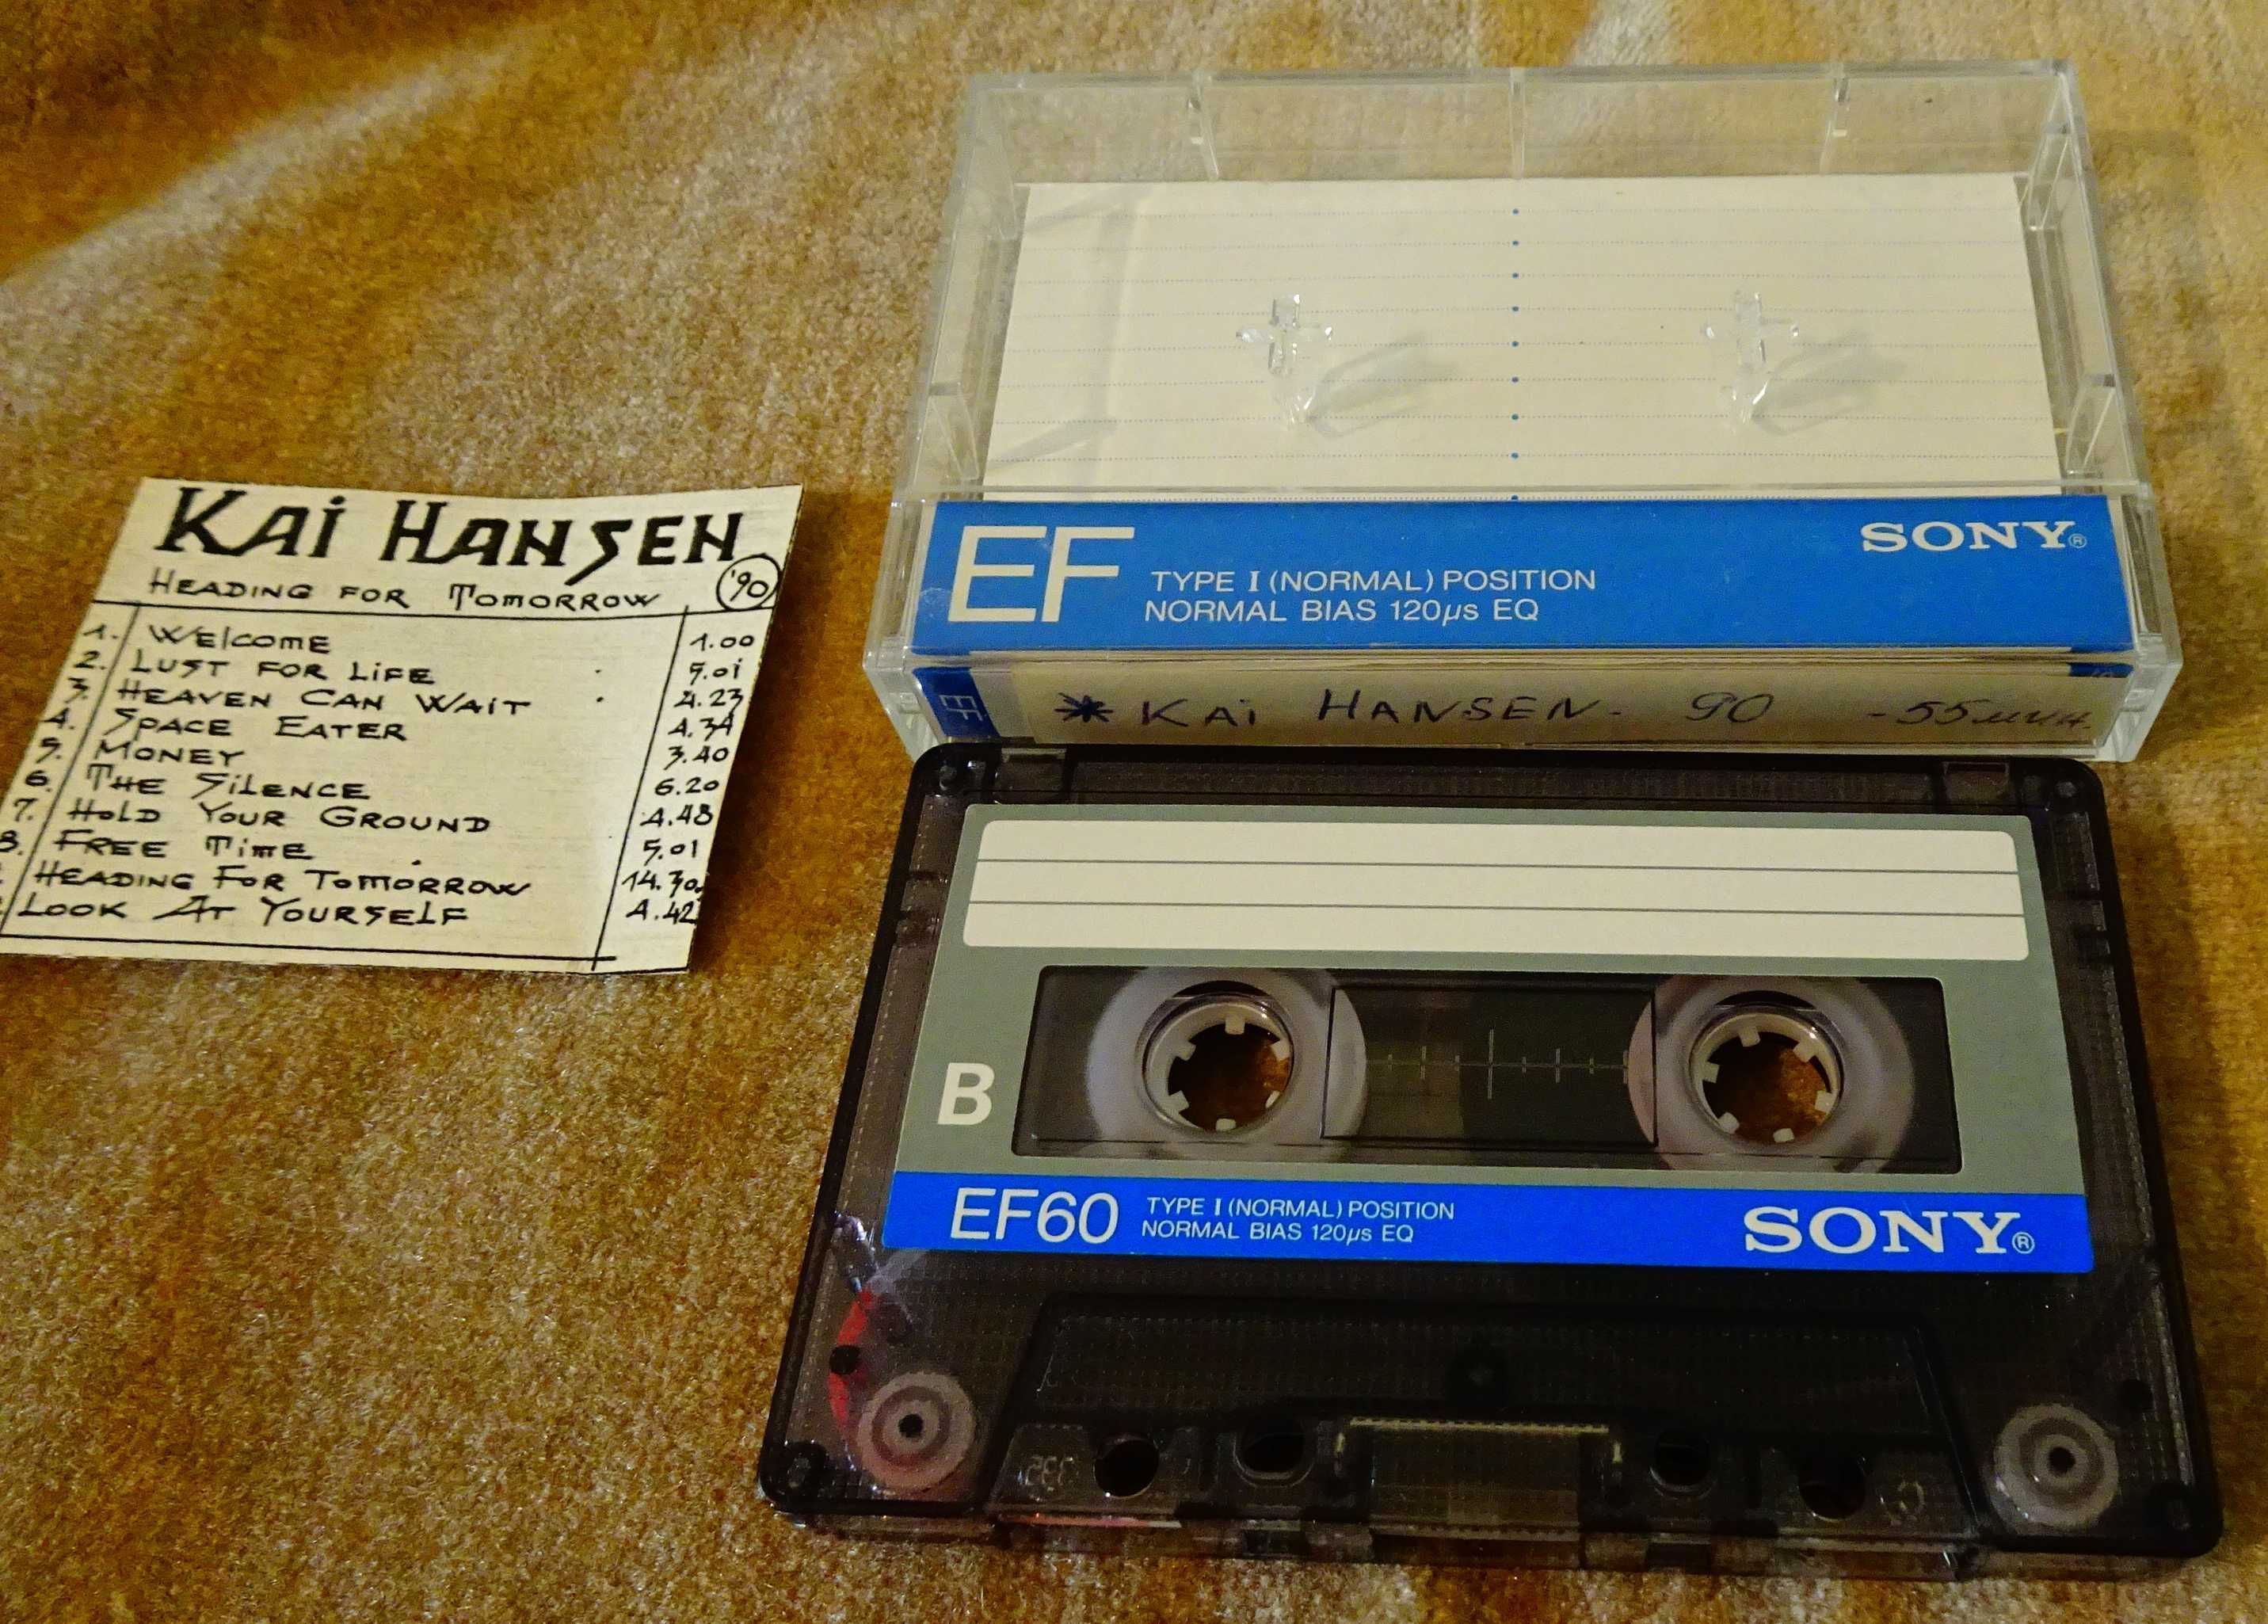 Sony аудиокасети с Kai Hansen.